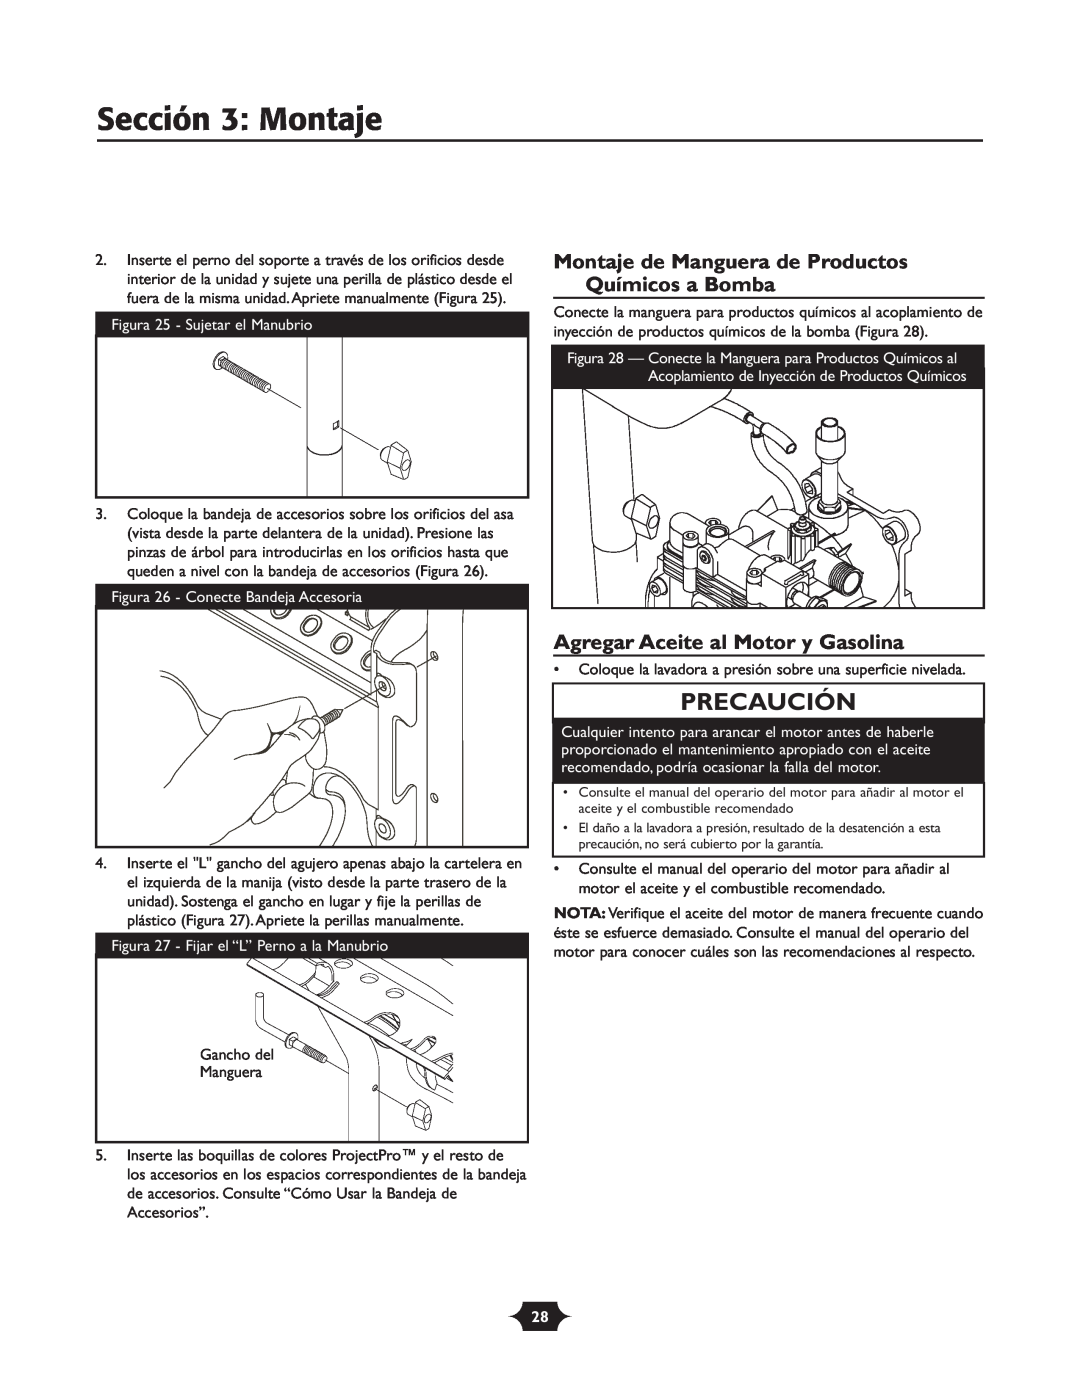 Briggs & Stratton 20263 manual Sección 3 Montaje, Montaje de Manguera de Productos Químicos a Bomba, Precaución 